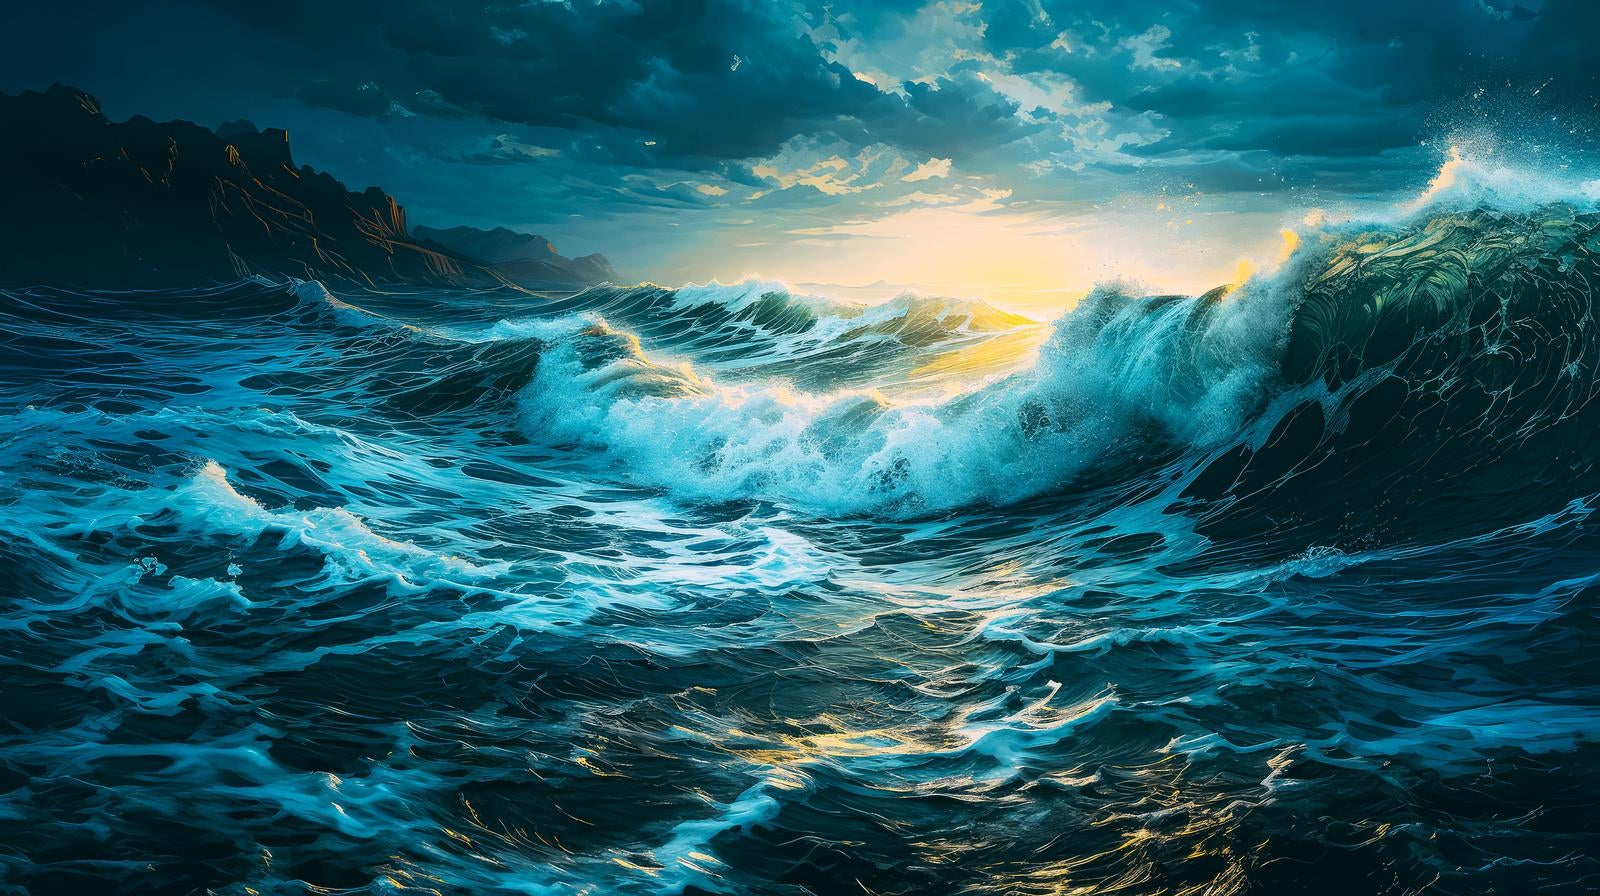 「荒れ狂う嵐と波の壮絶な様子」の写真